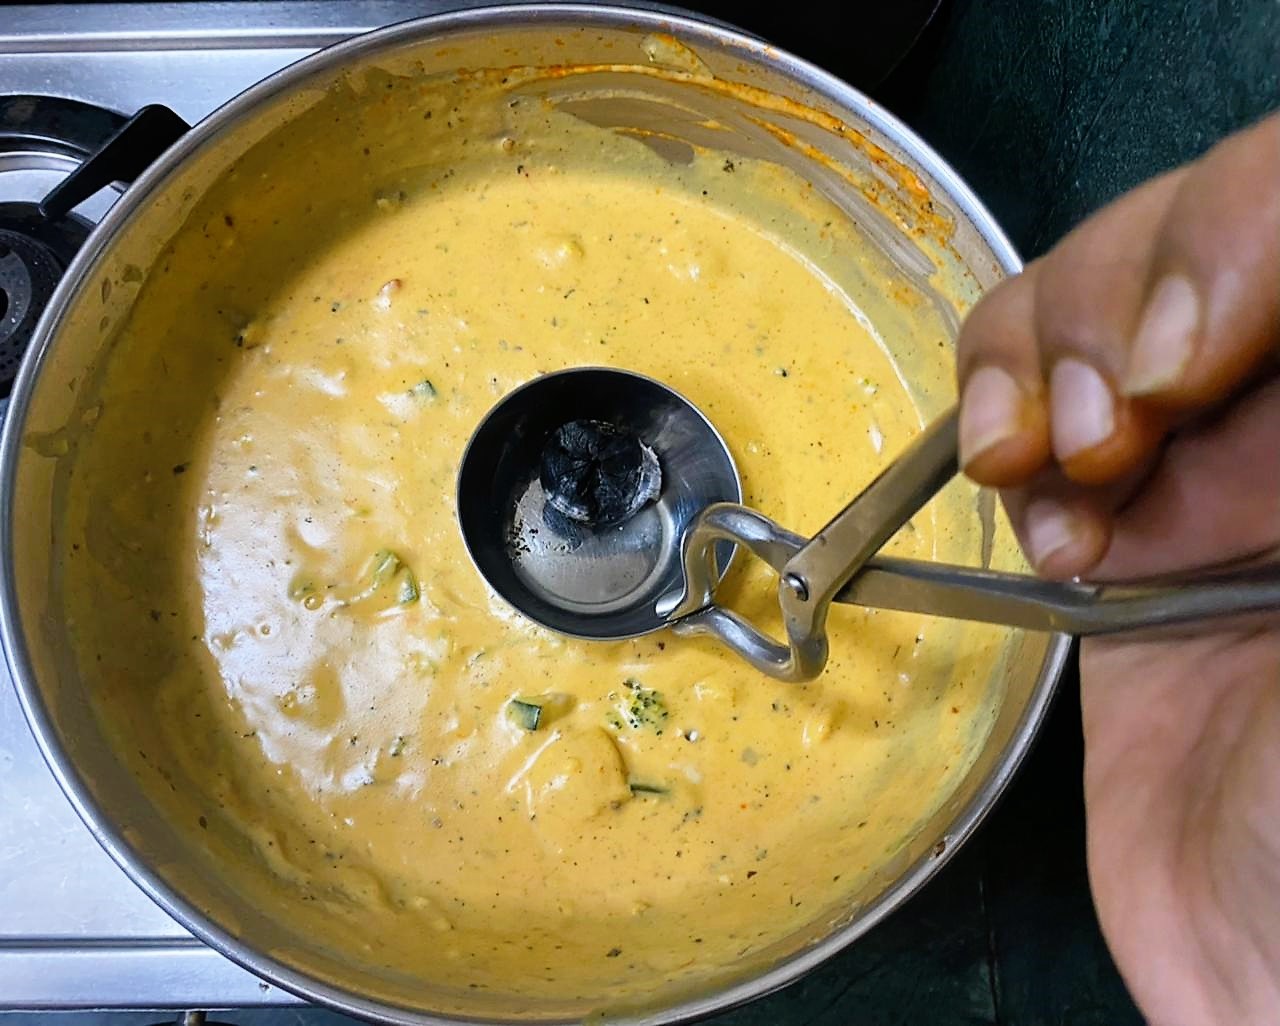 Sauteed Vegetables in Tandoori Sauce Recipe